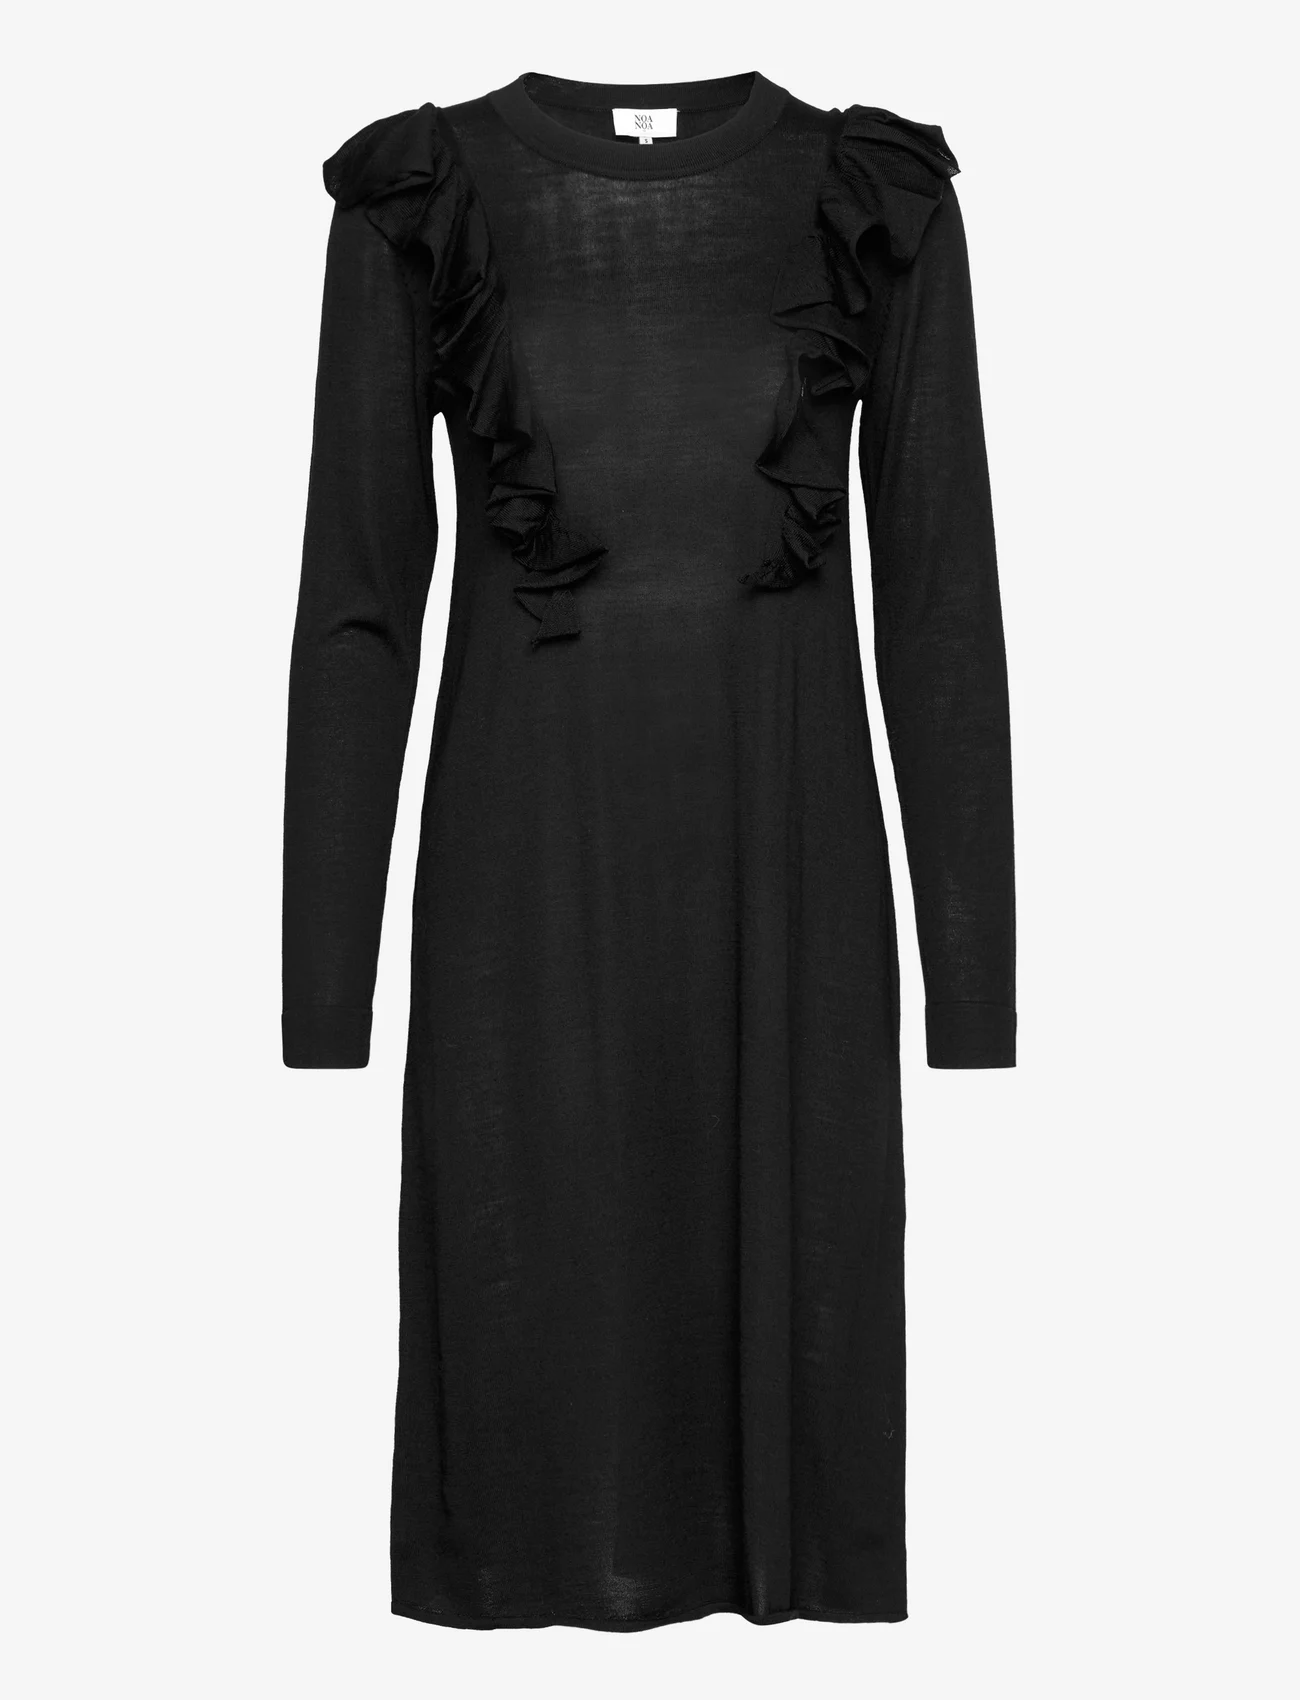 Noa Noa - Dress long sleeve - midikjoler - black - 0